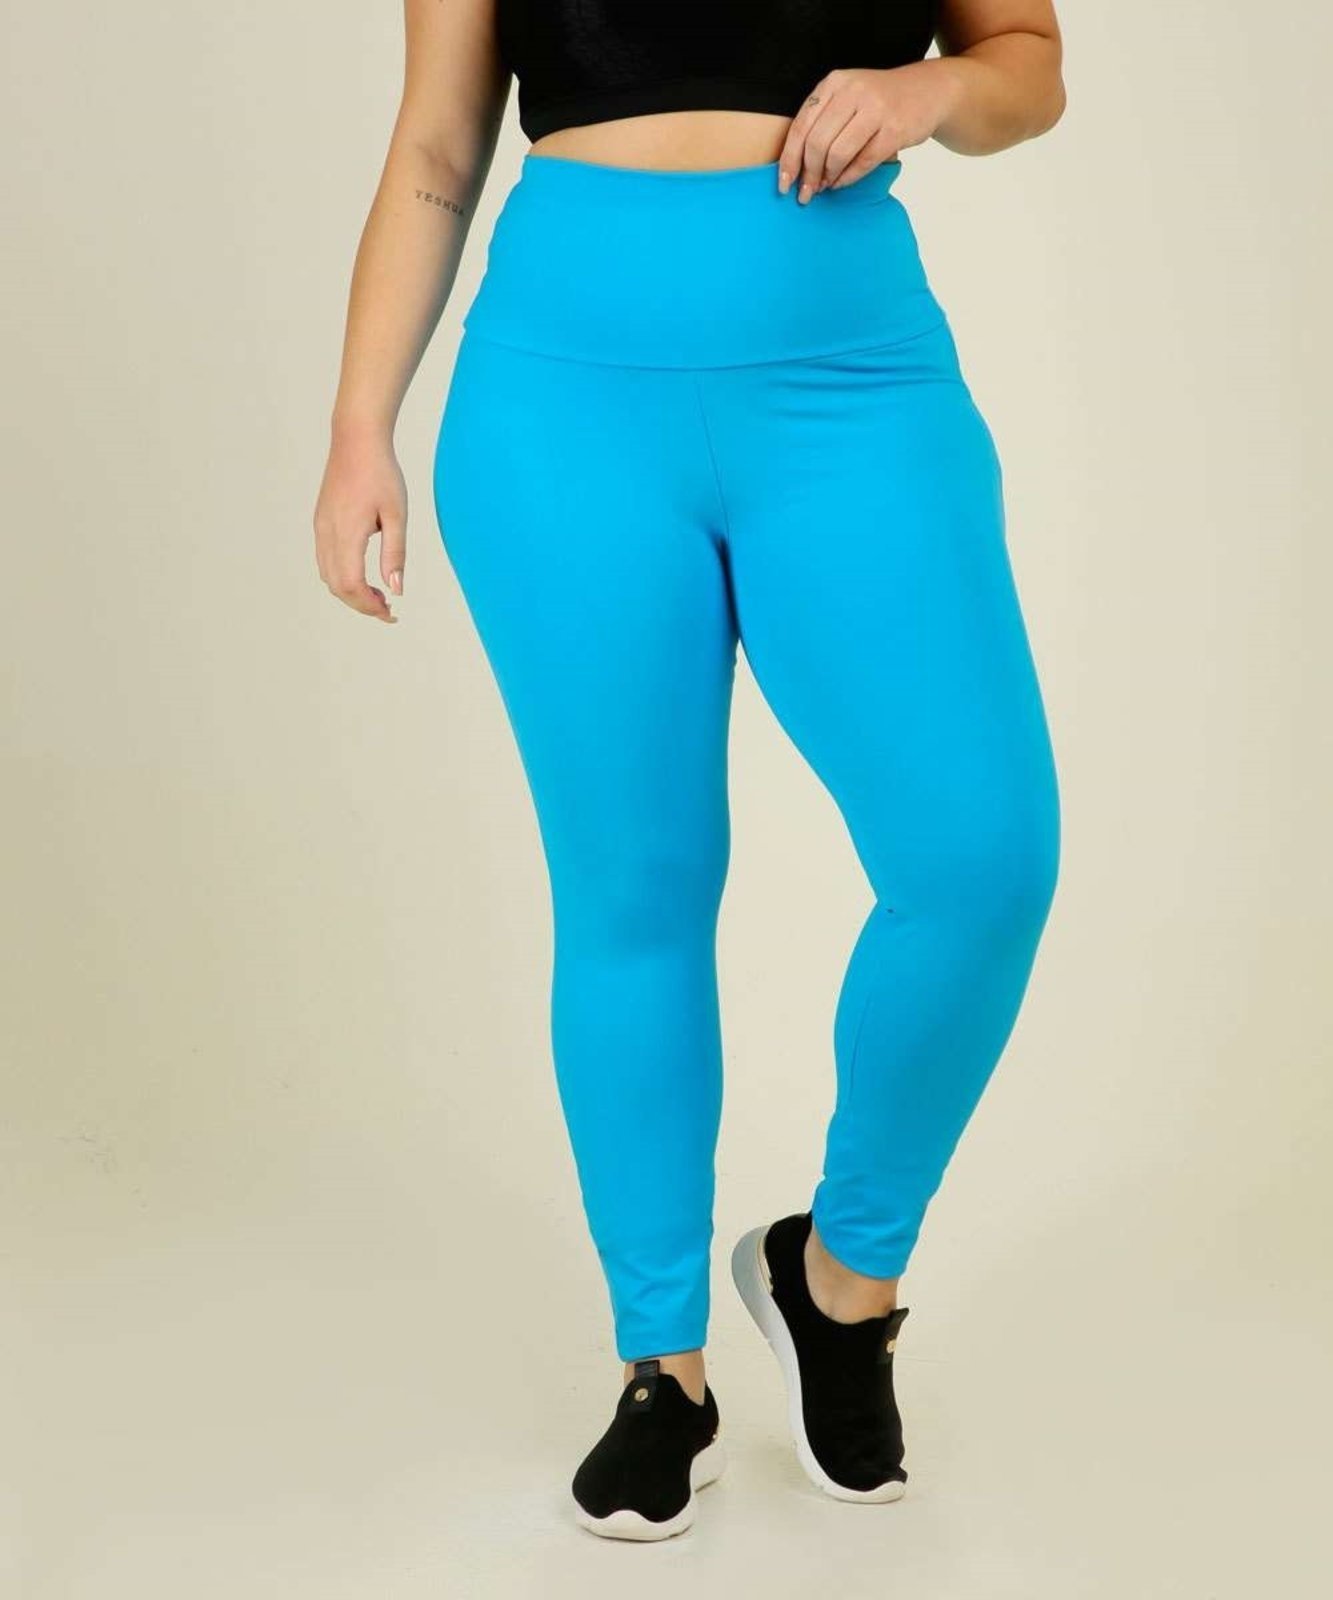 Calça Plus Size Feminina Legging Fitness Costa Rica - Compre Agora